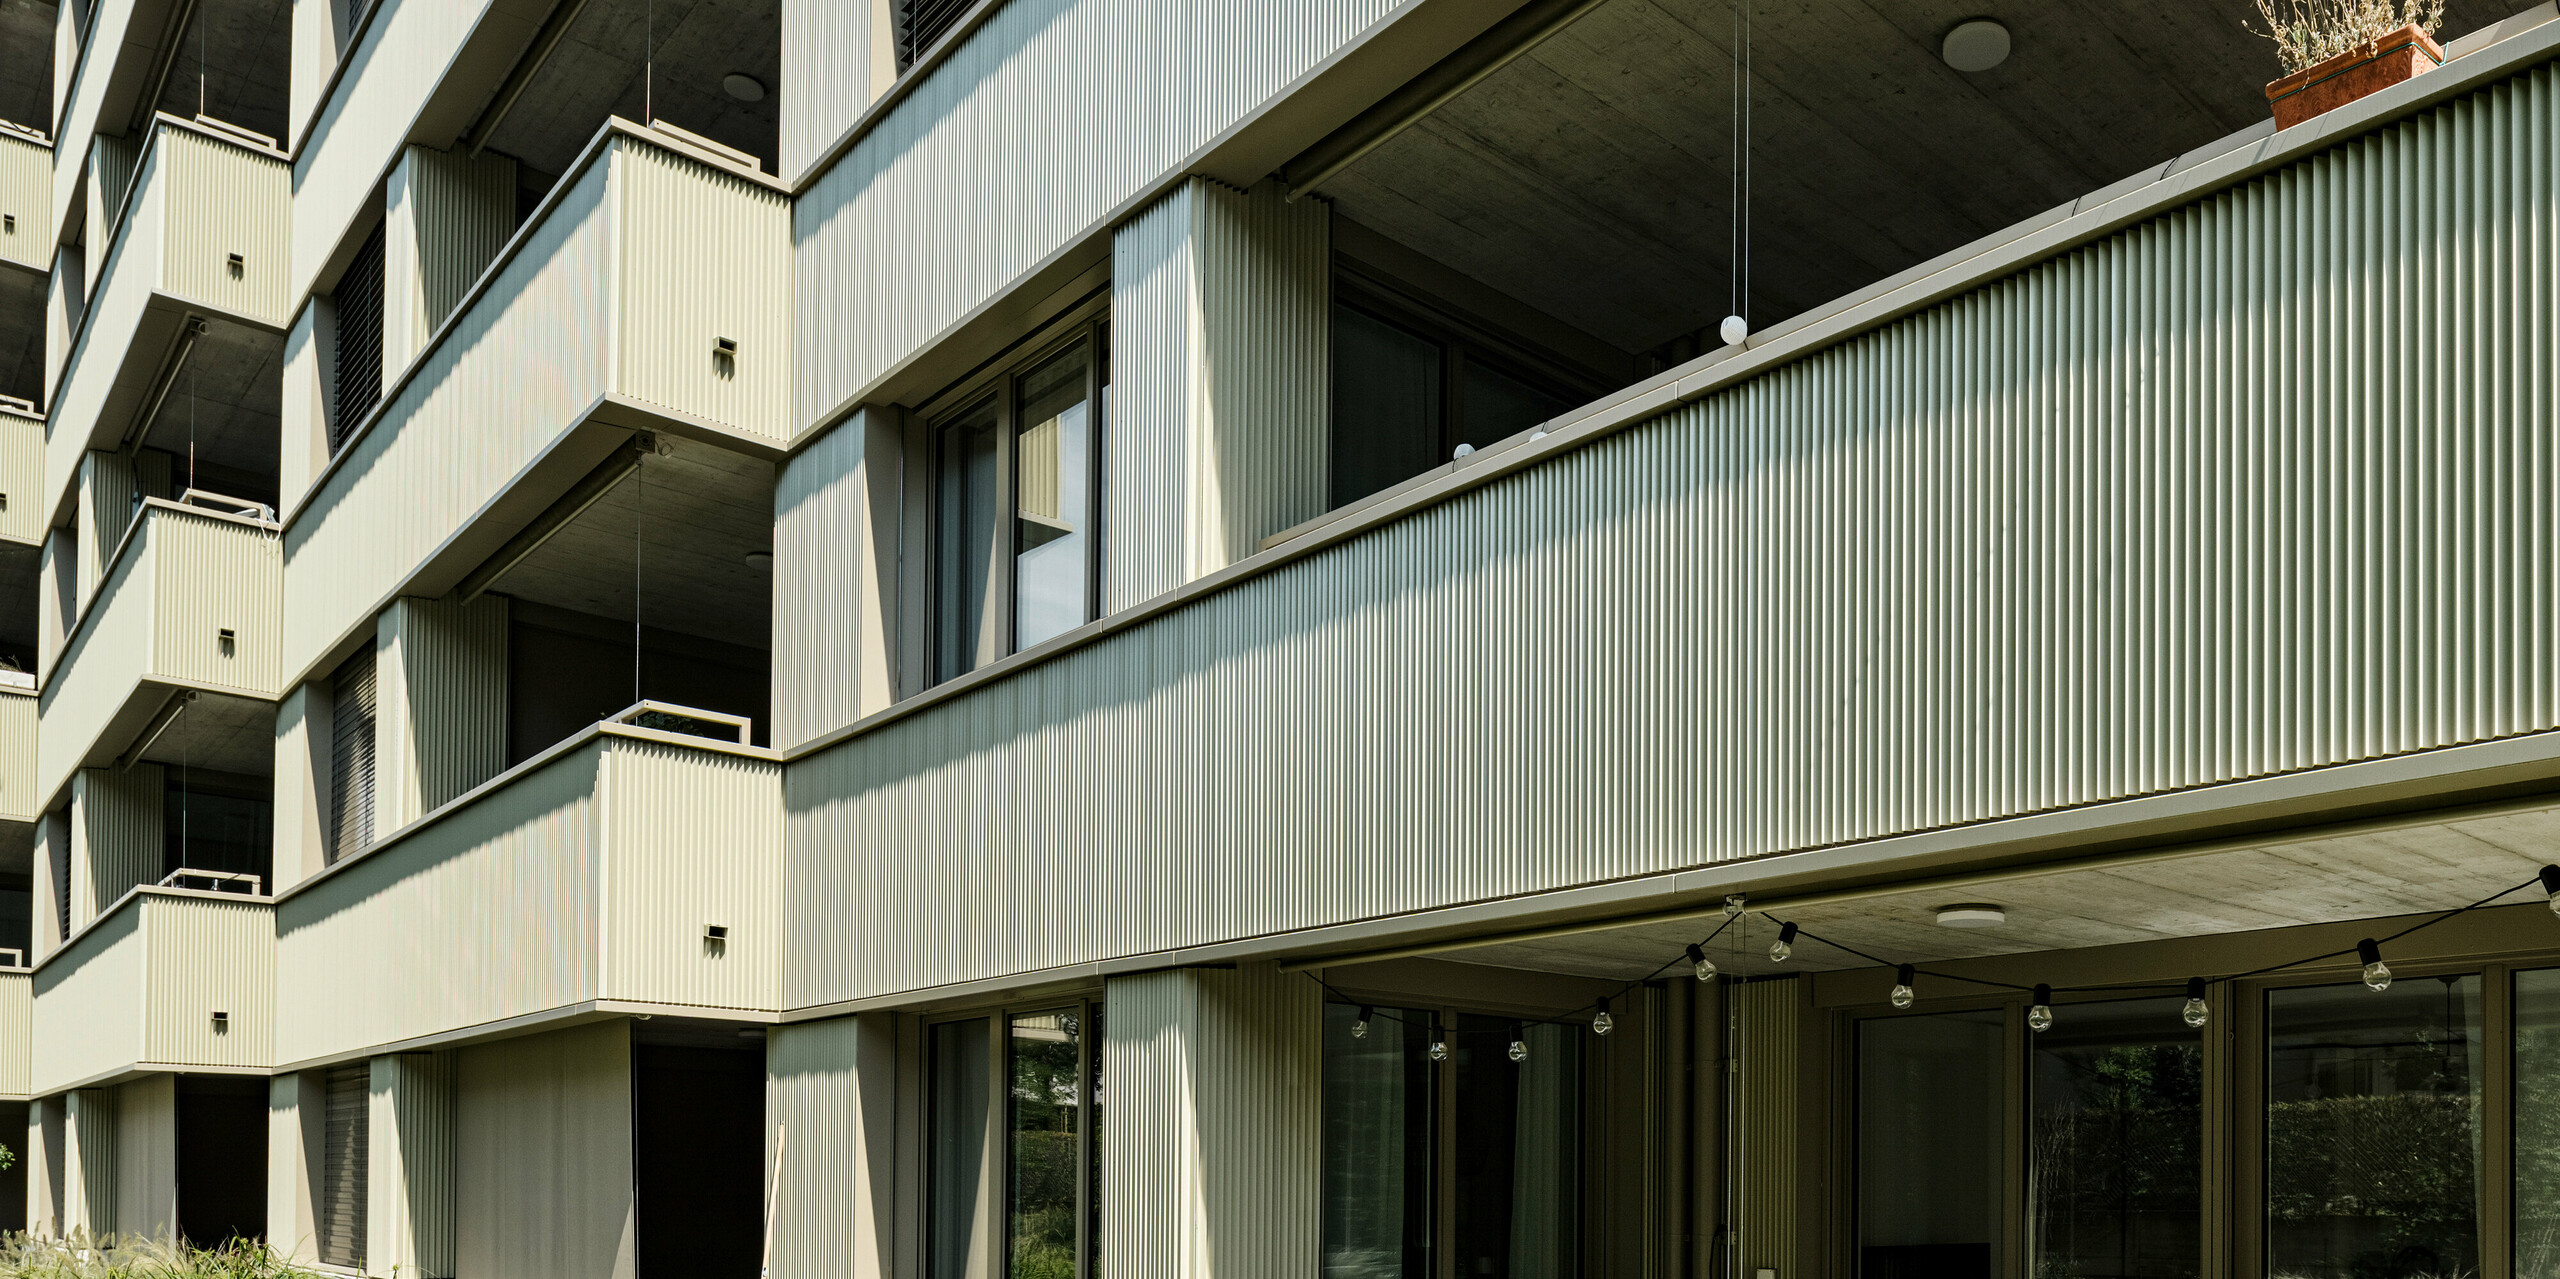 Das moderne Wohngebäude "Stetterhaus" in Altstetten, Zürich wird umhüllt von einer einzigartigen Fassade - PREFA Zackenprofil in der Sonderfarbe Perl-Metallic.